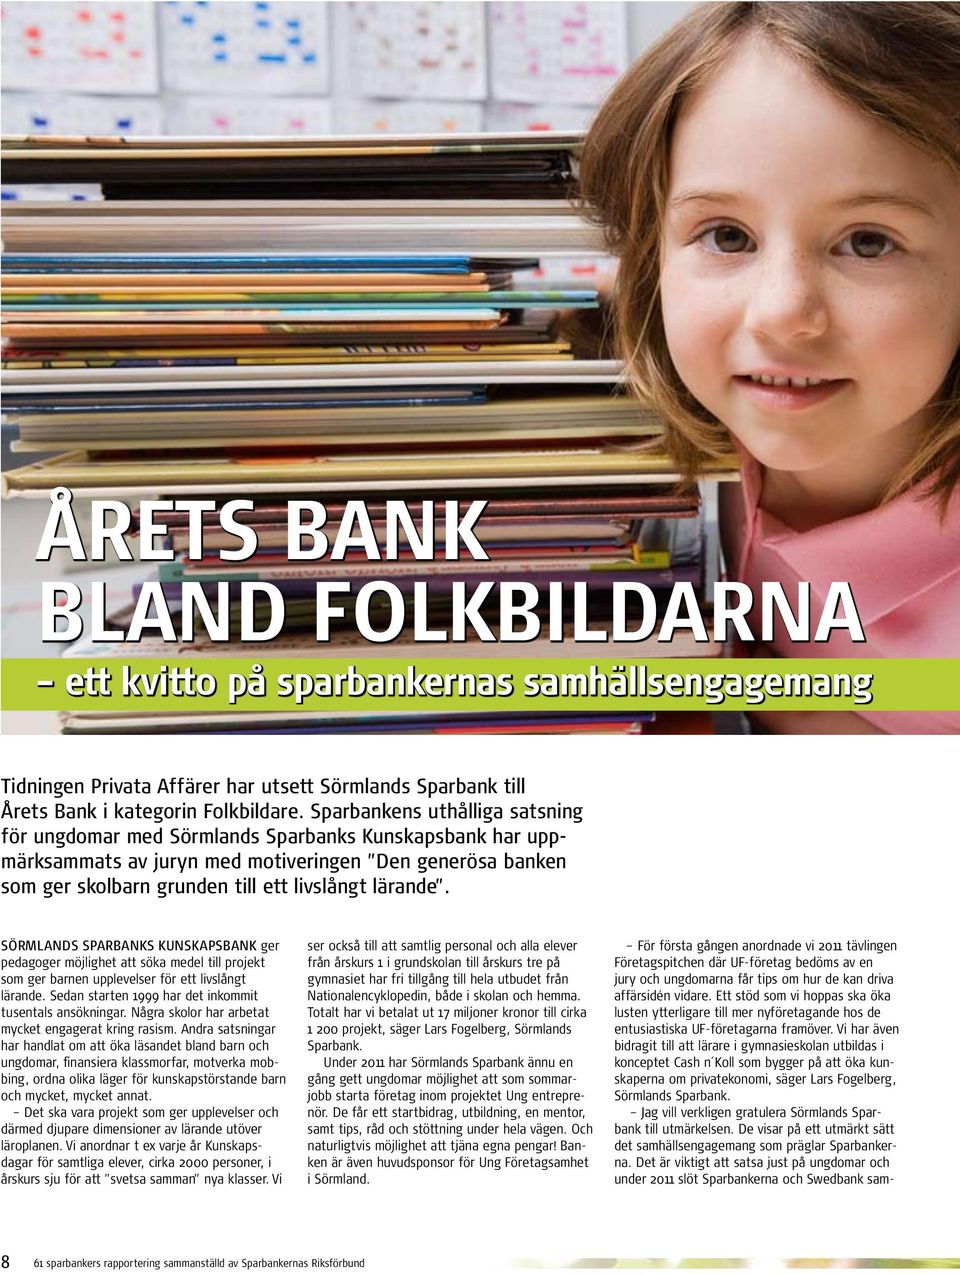 Sörmlands Sparbanks Kunskapsbank ger pedagoger möjlighet att söka medel till projekt som ger barnen upplevelser för ett livslångt lärande. Sedan starten 1999 har det inkommit tusentals ansökningar.